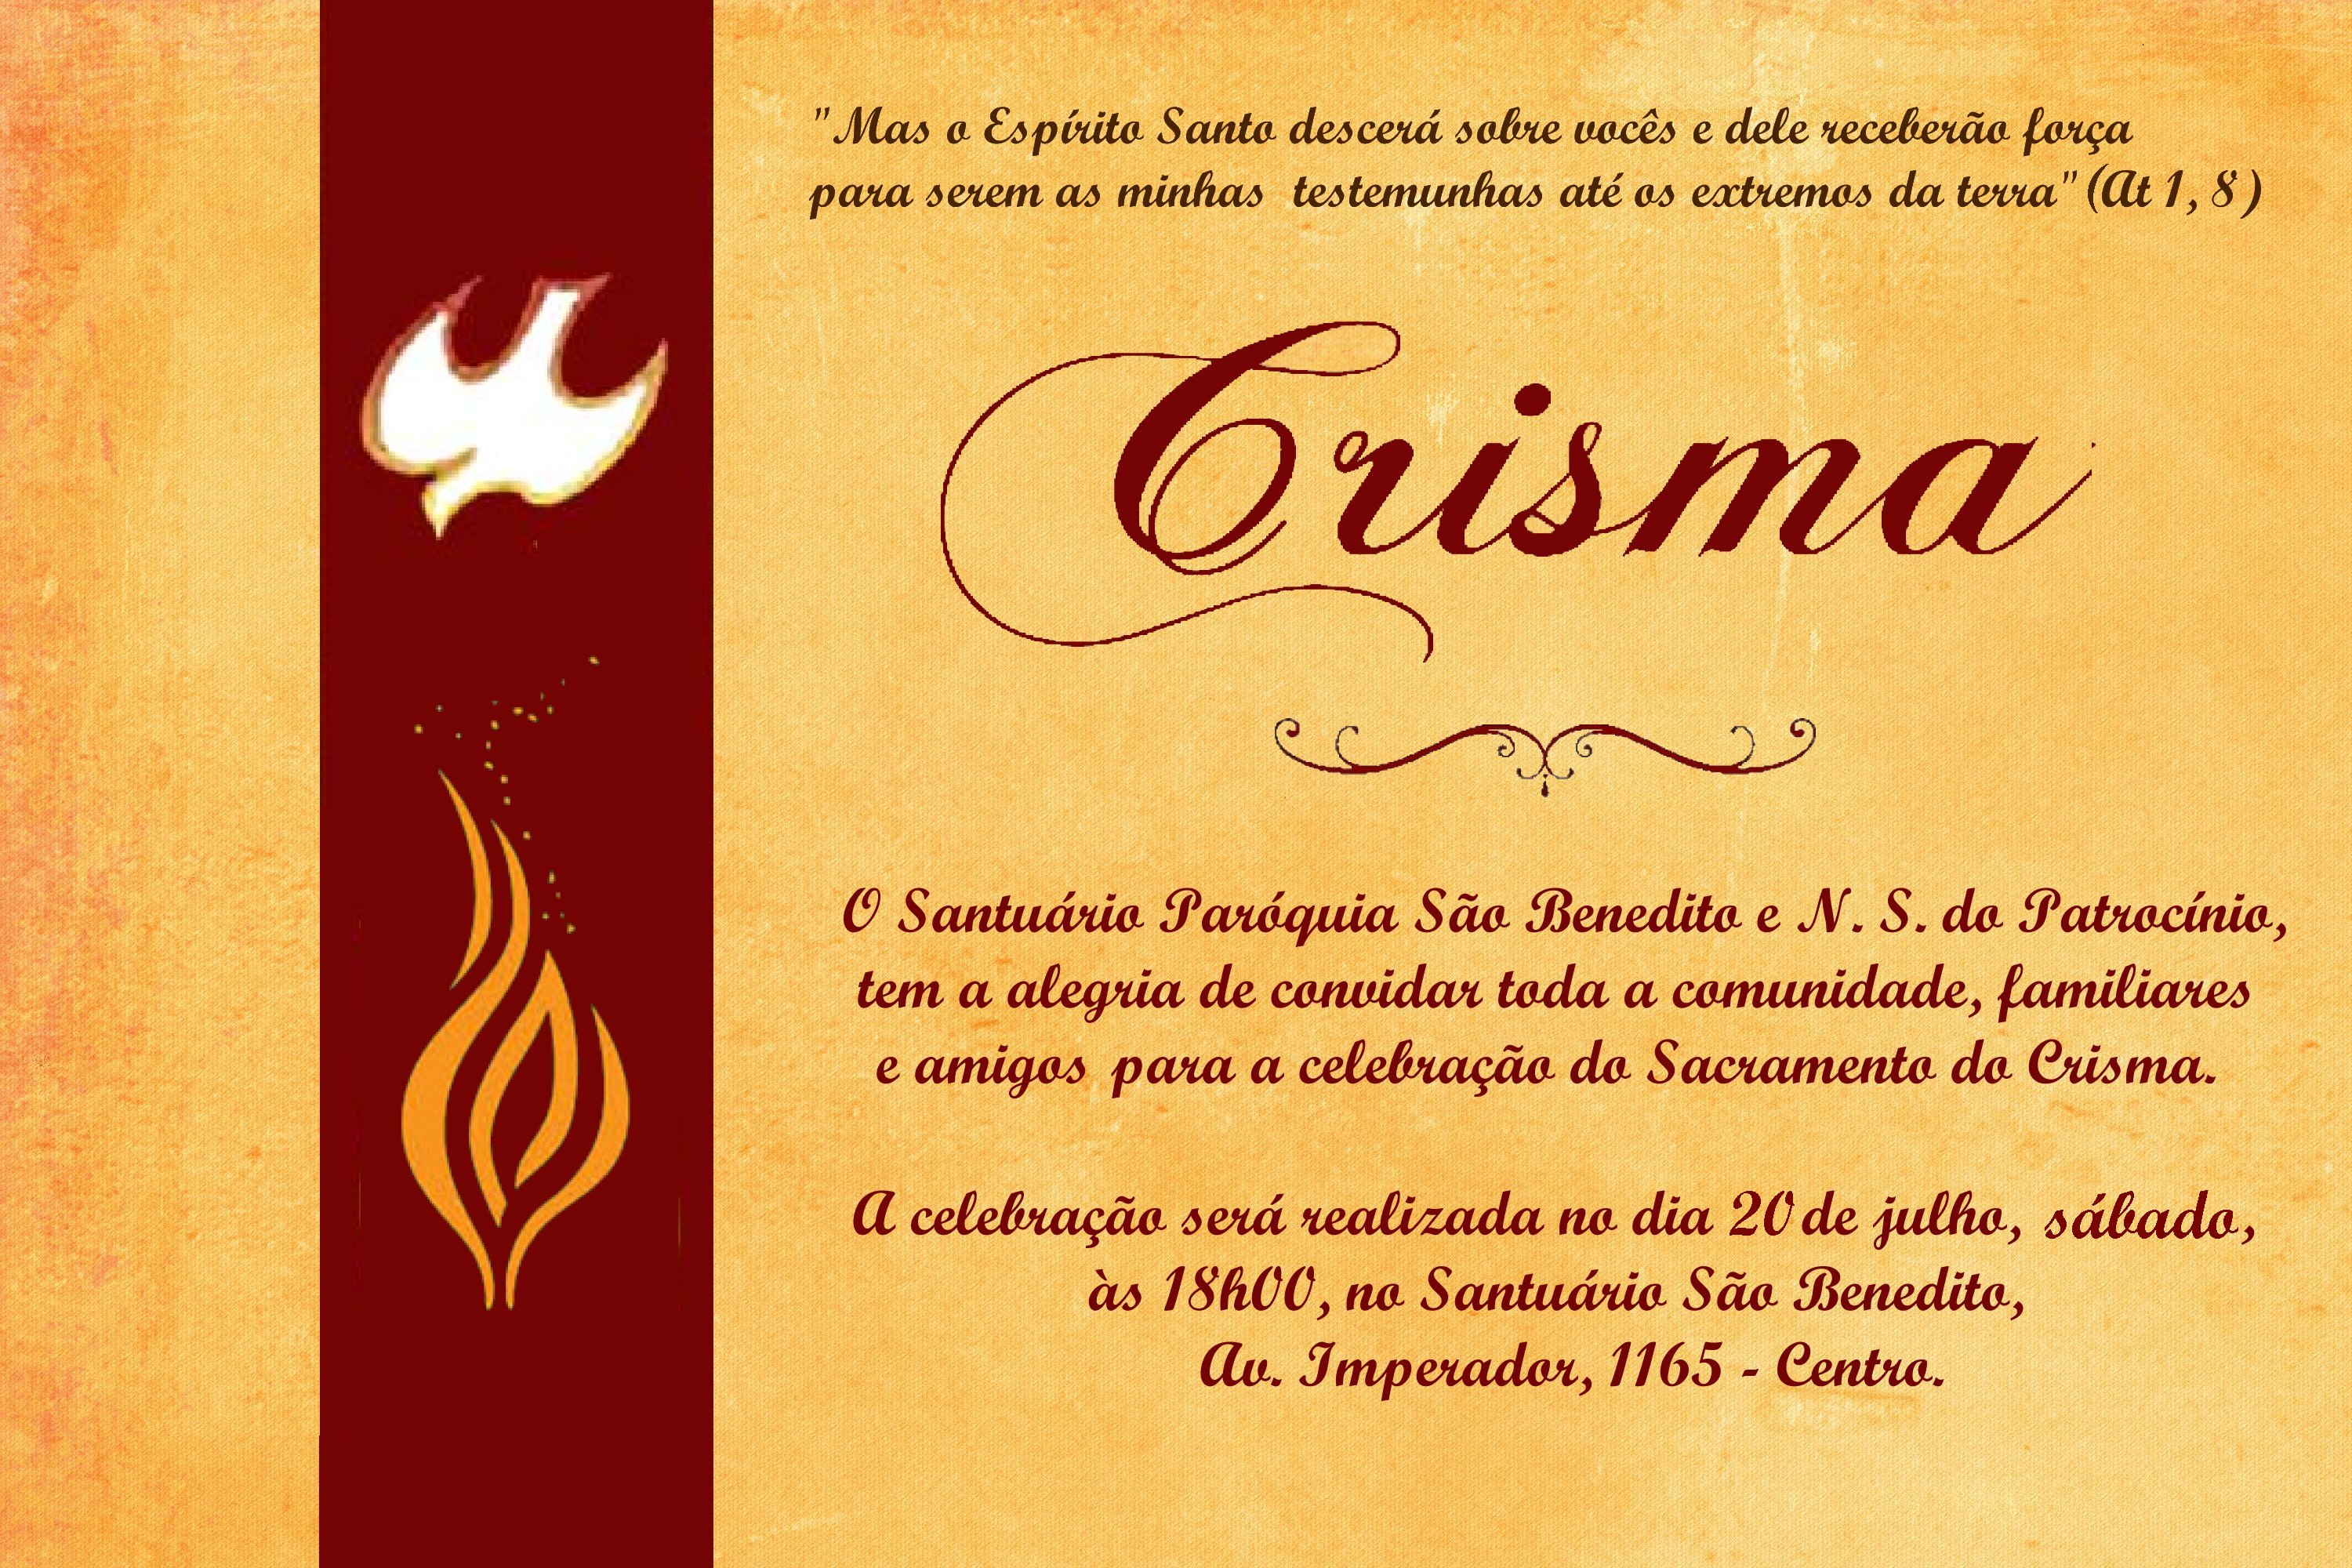 Convite para Celebração do Sacramento do Crisma no dia 20/07 na Paróquia São Benedito